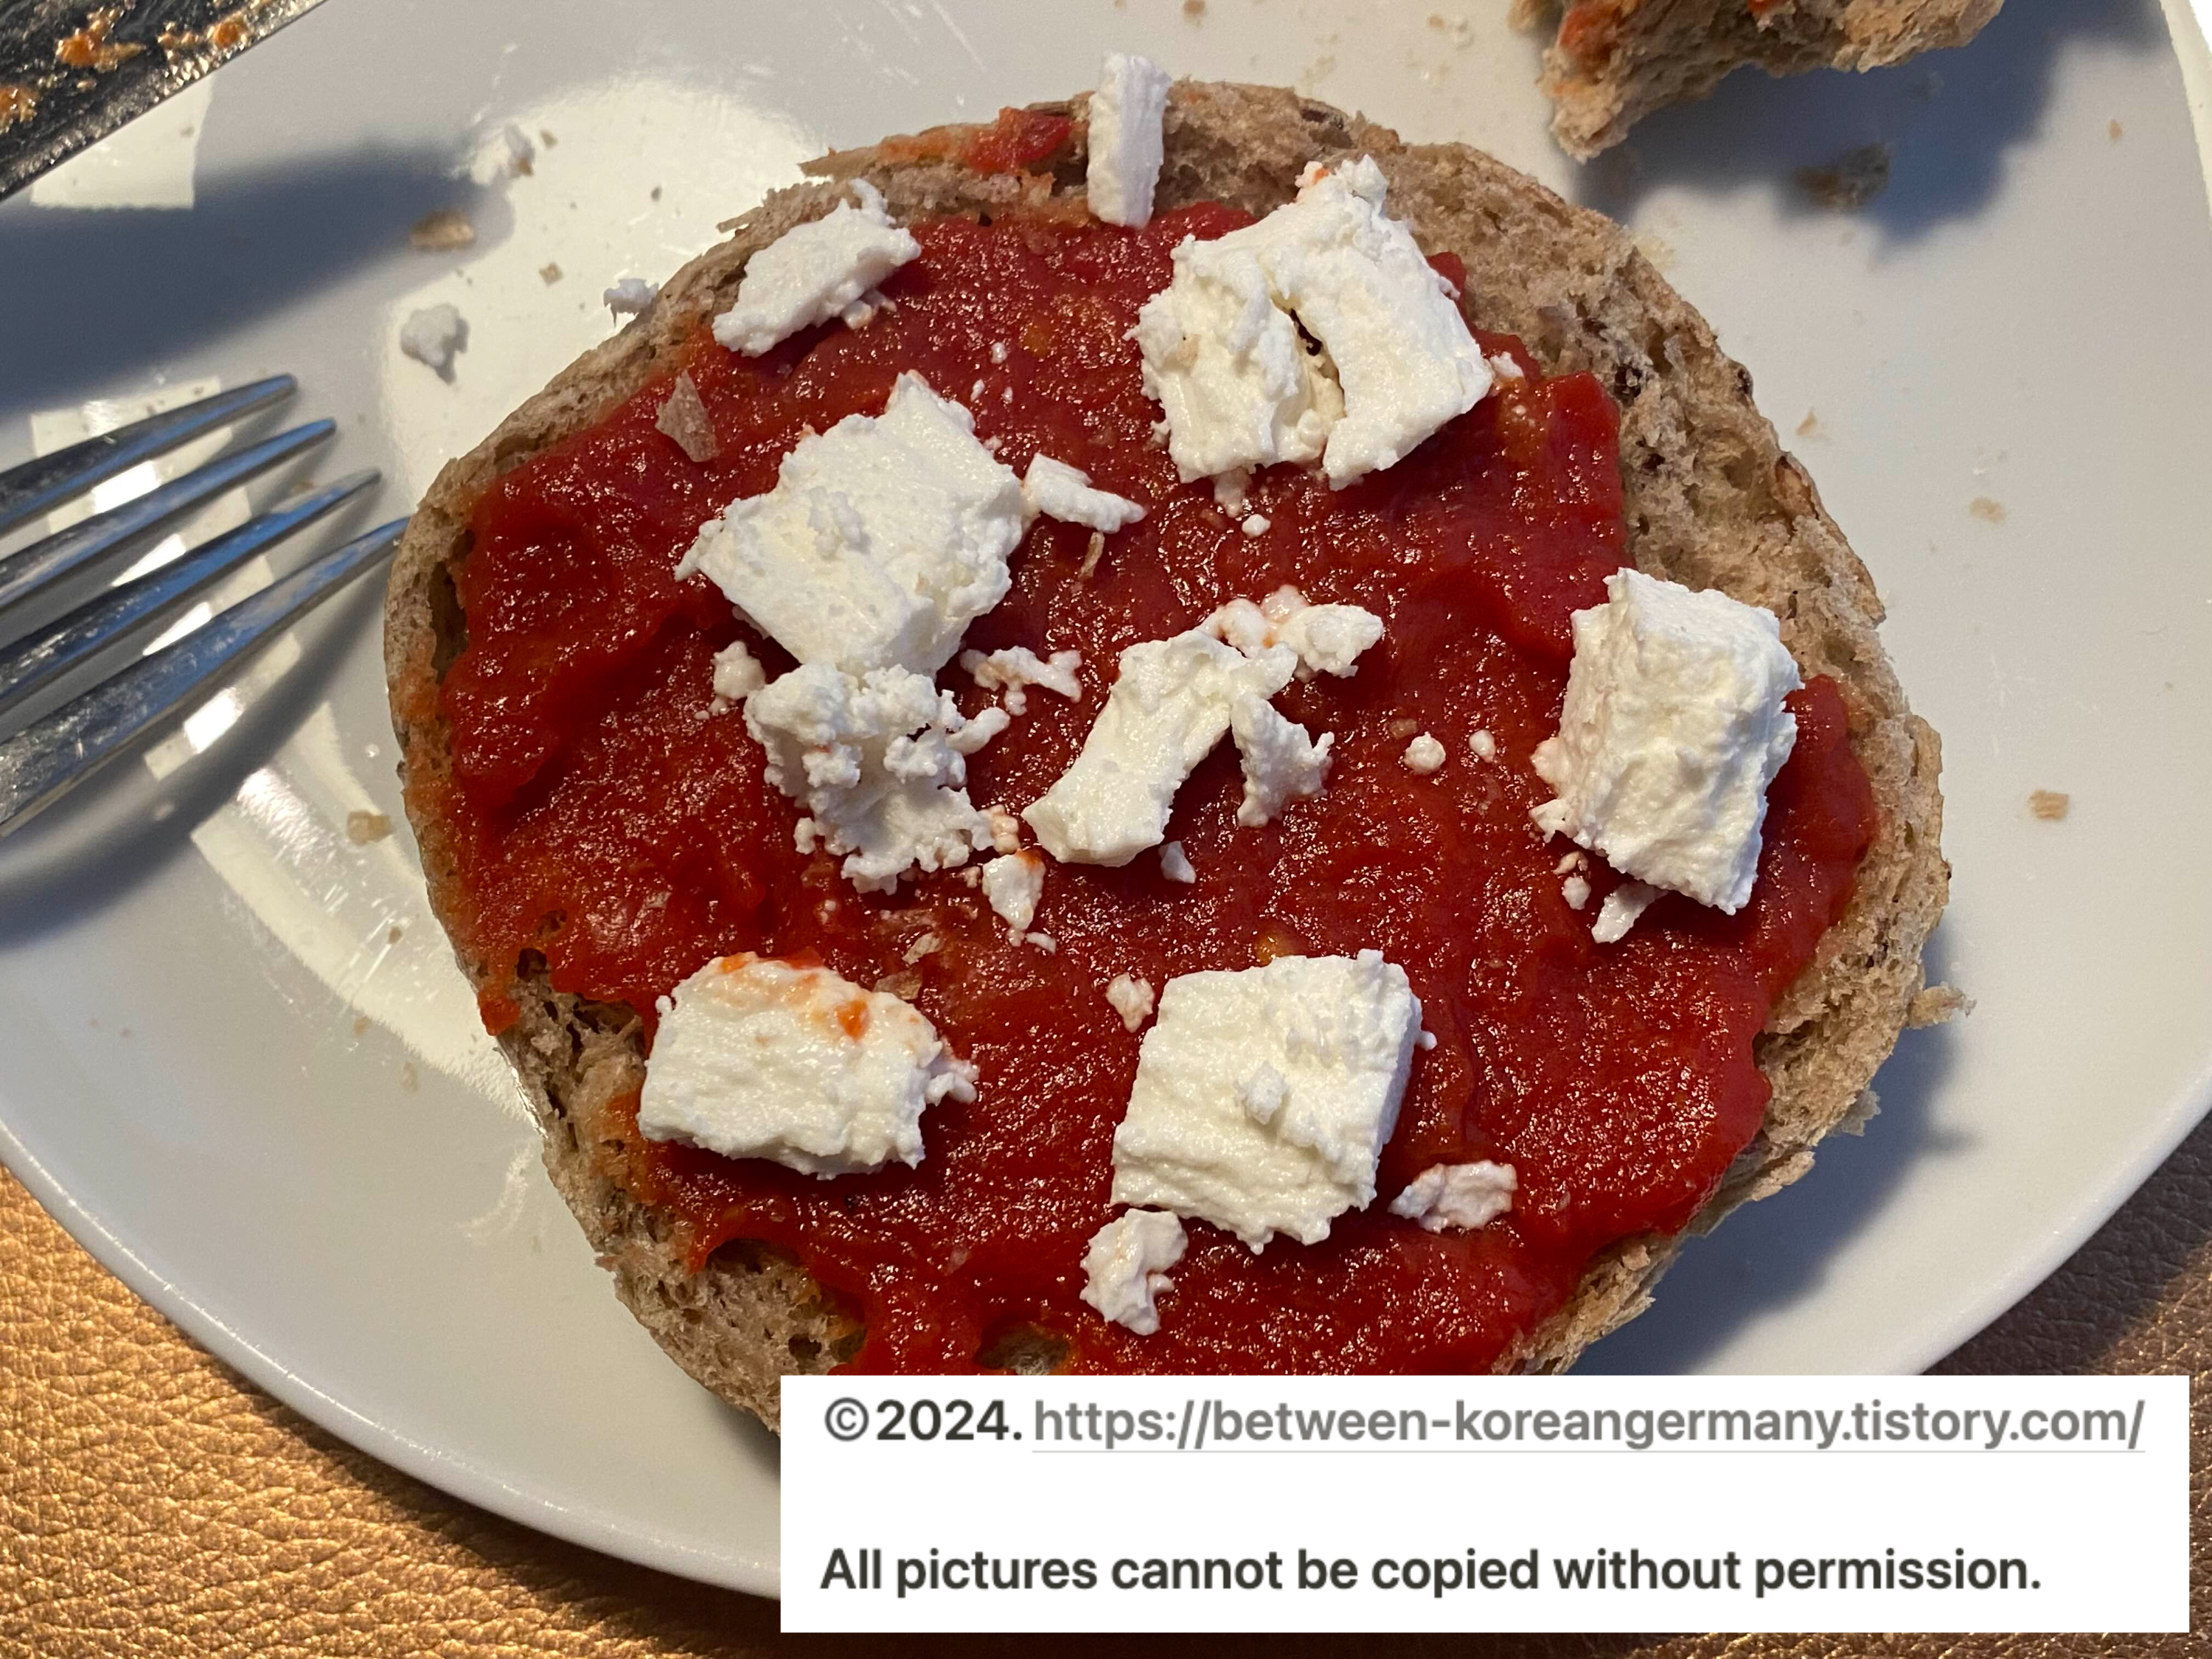 접시 위에 담긴 반으로 잘린 빵과 그 위에 올려진 빨간색 토마토 소스 그리고 흰색 치즈 조각들